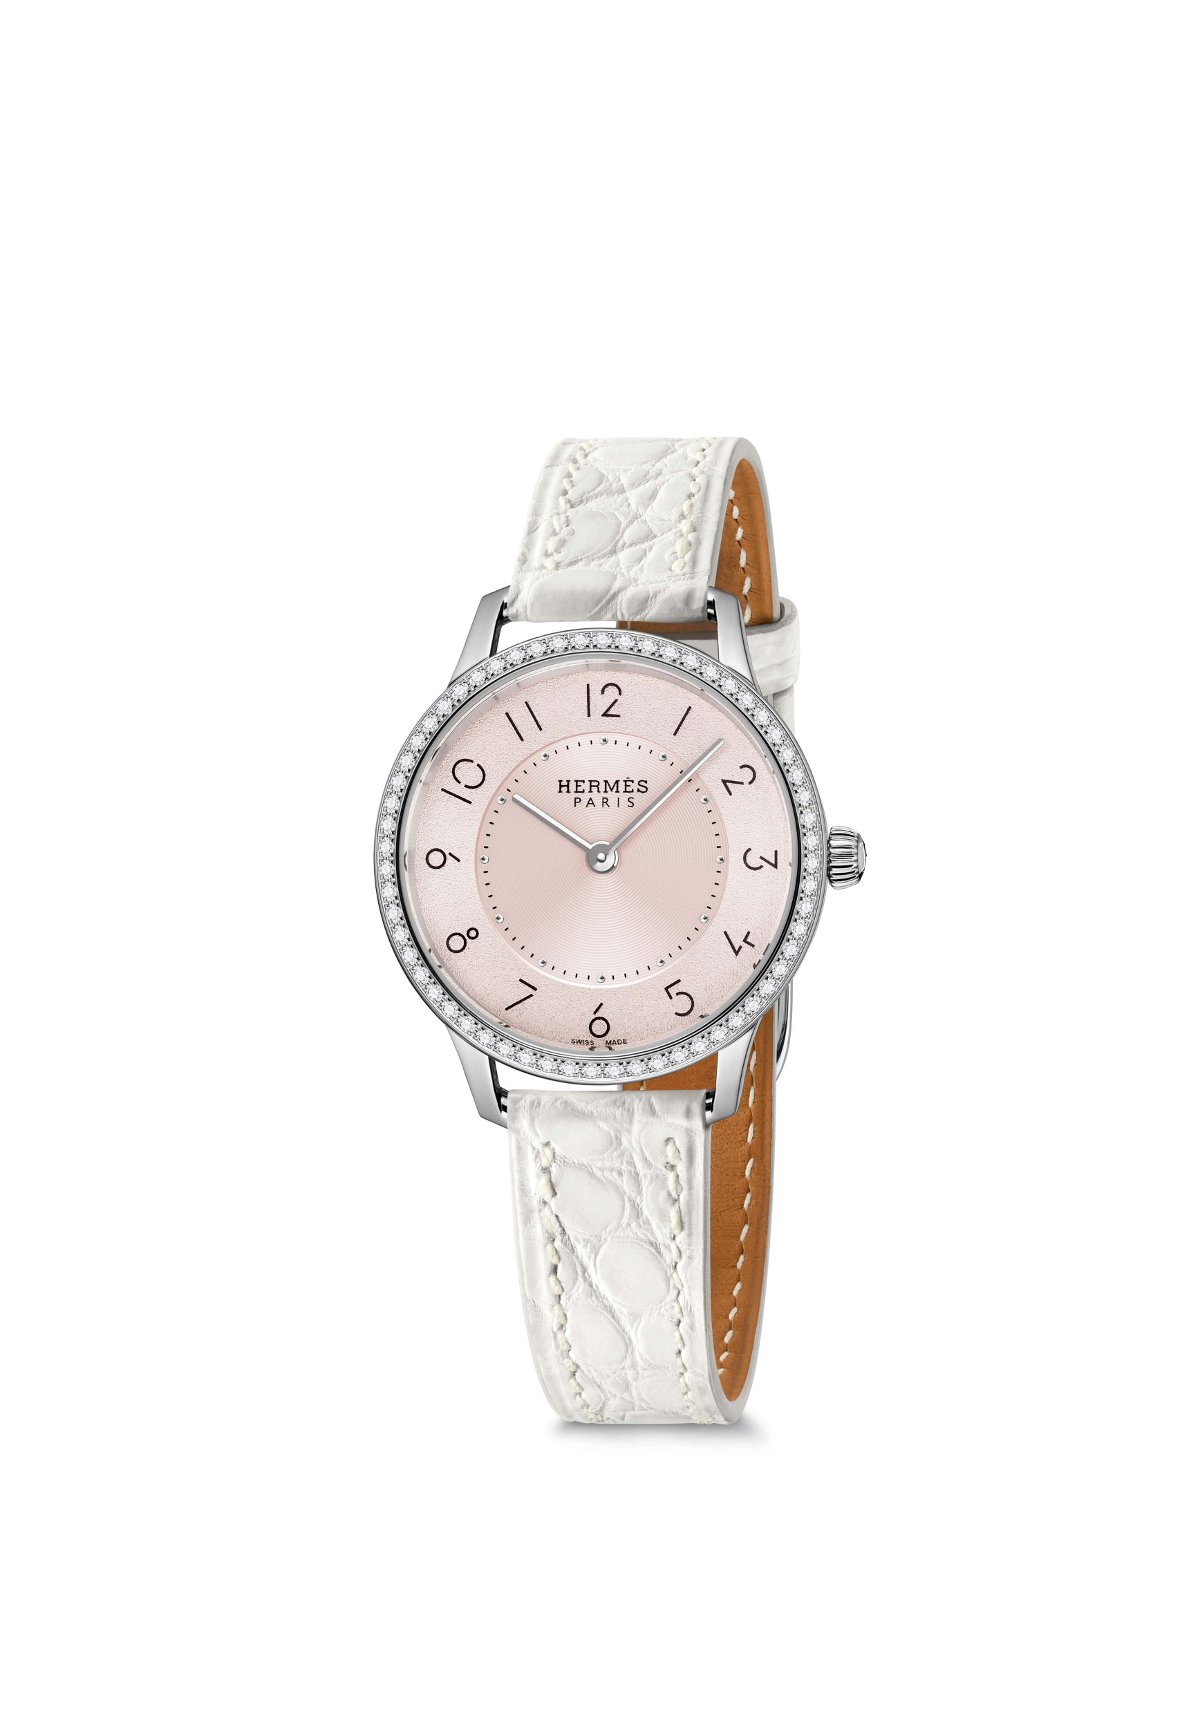 Jam tangan terbaru lansiran Hermès